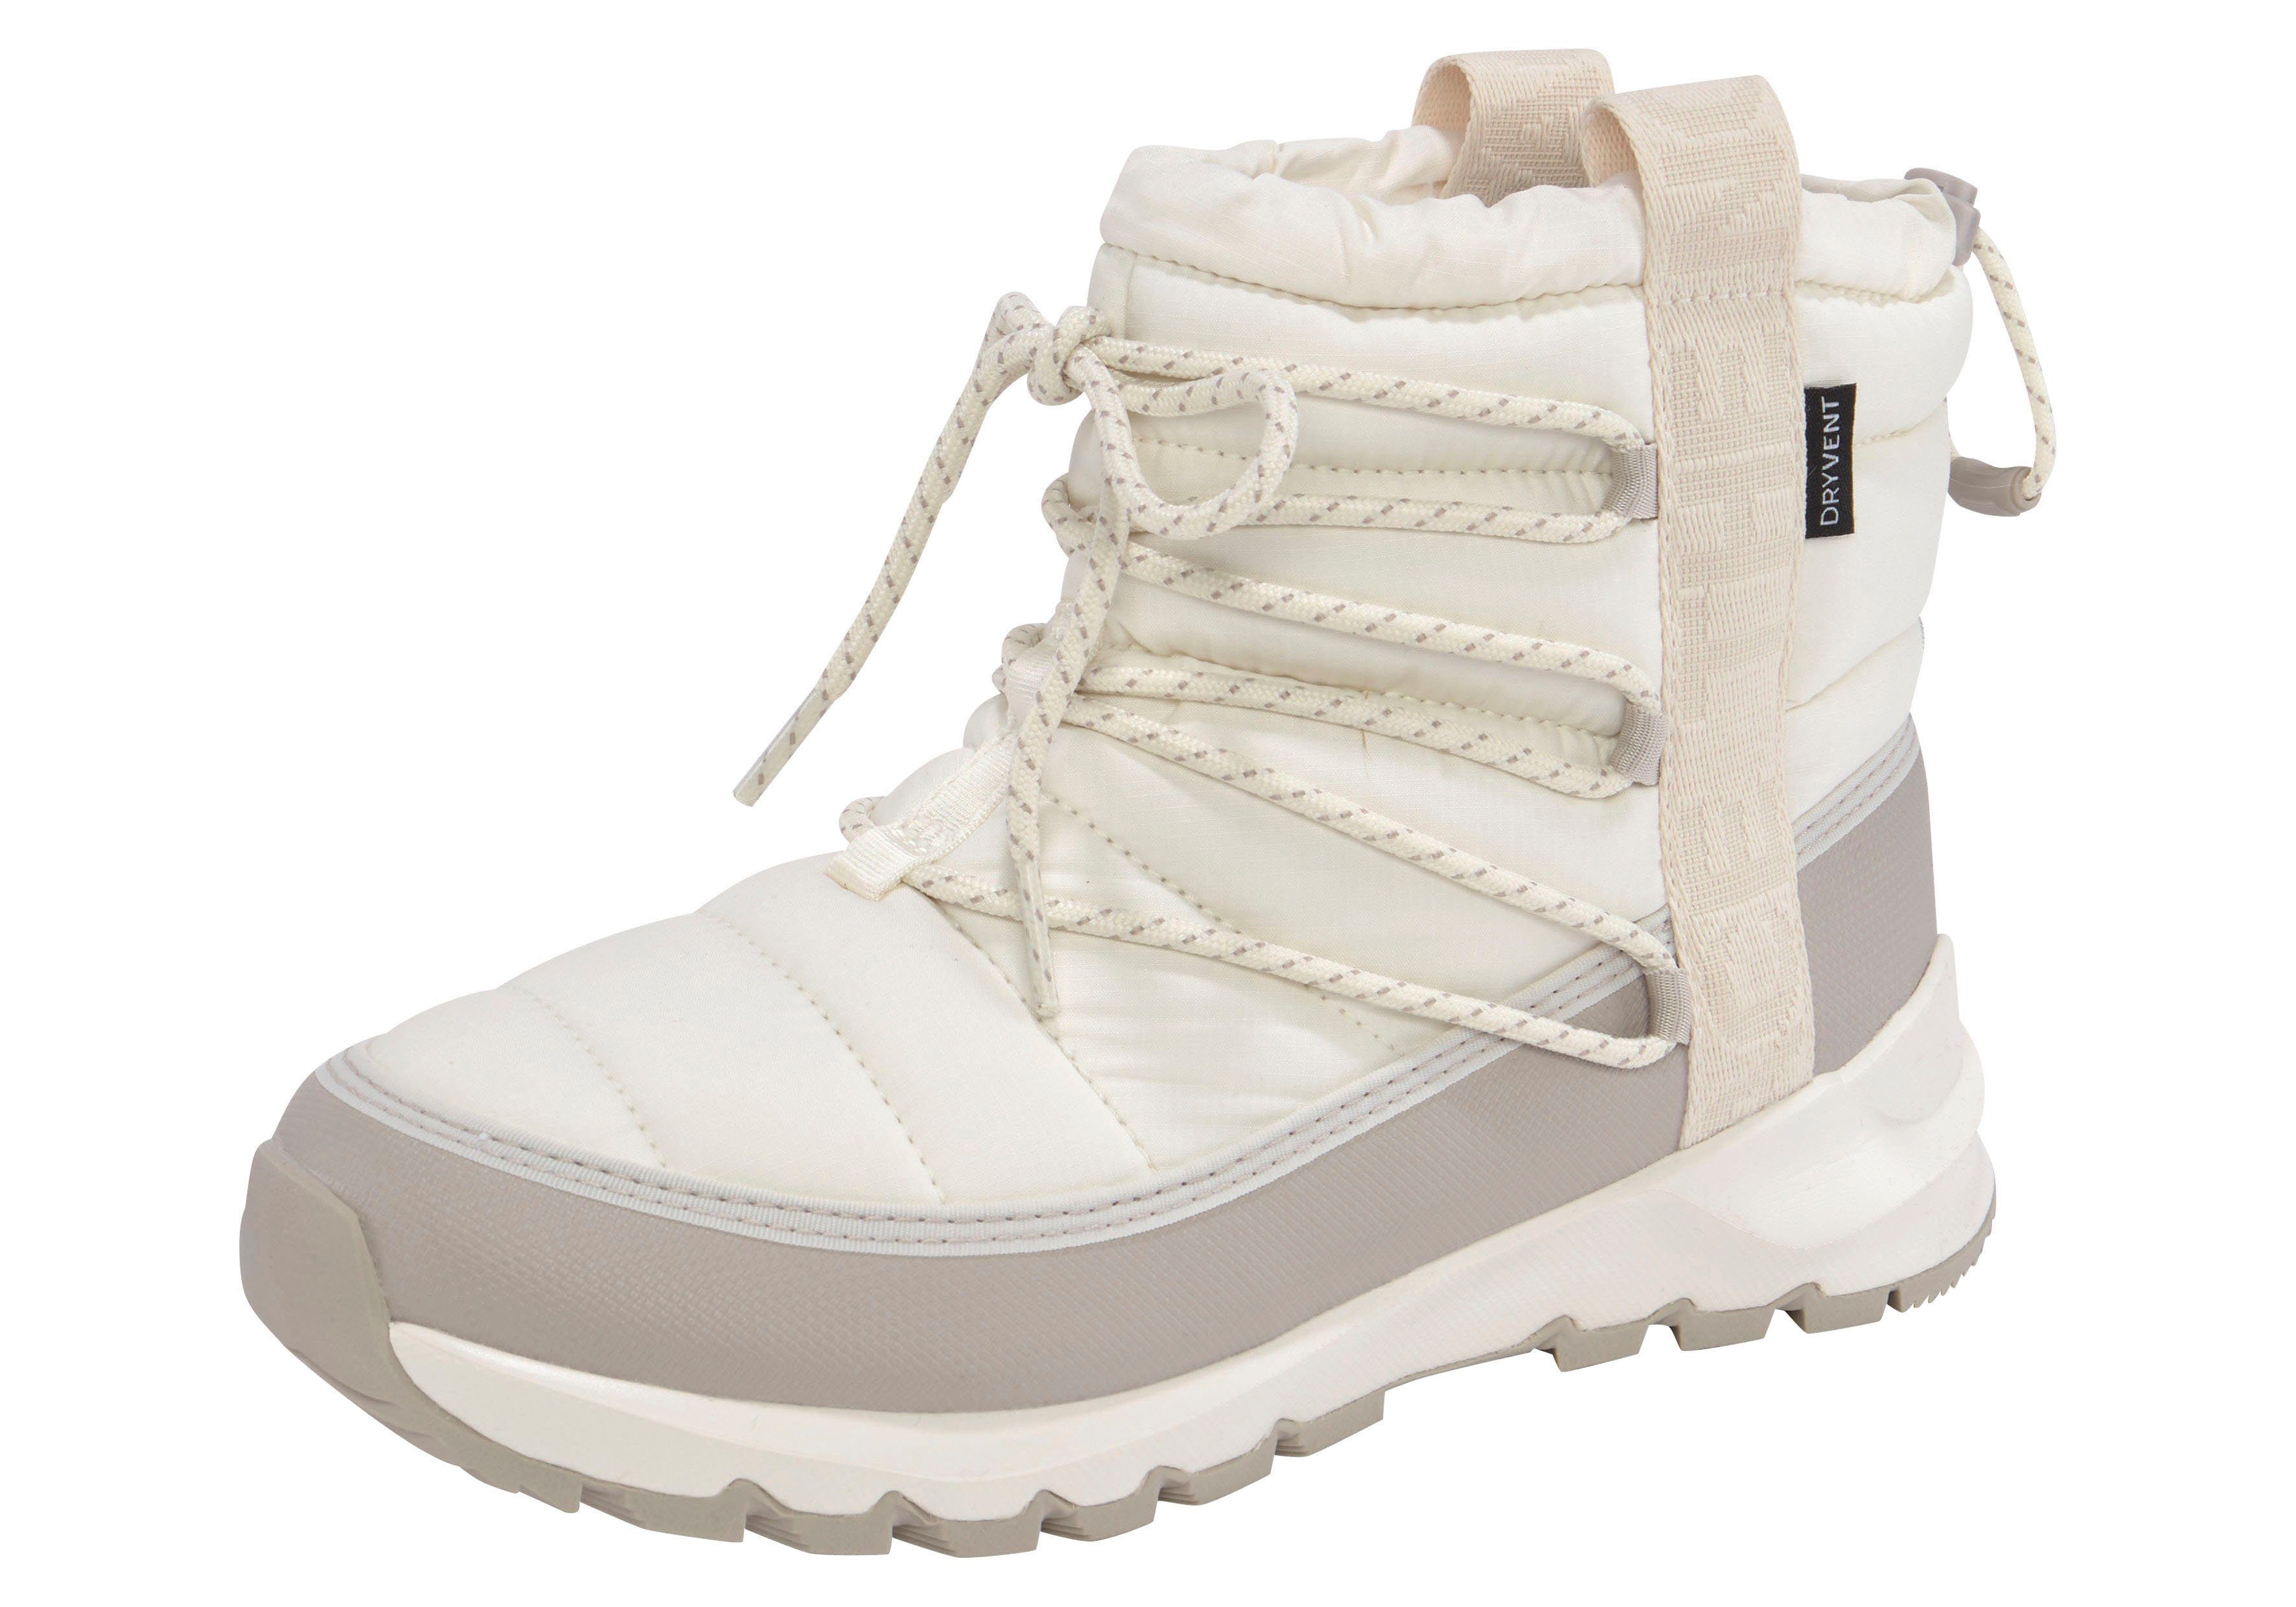 North Face Stiefel für Damen online kaufen | OTTO